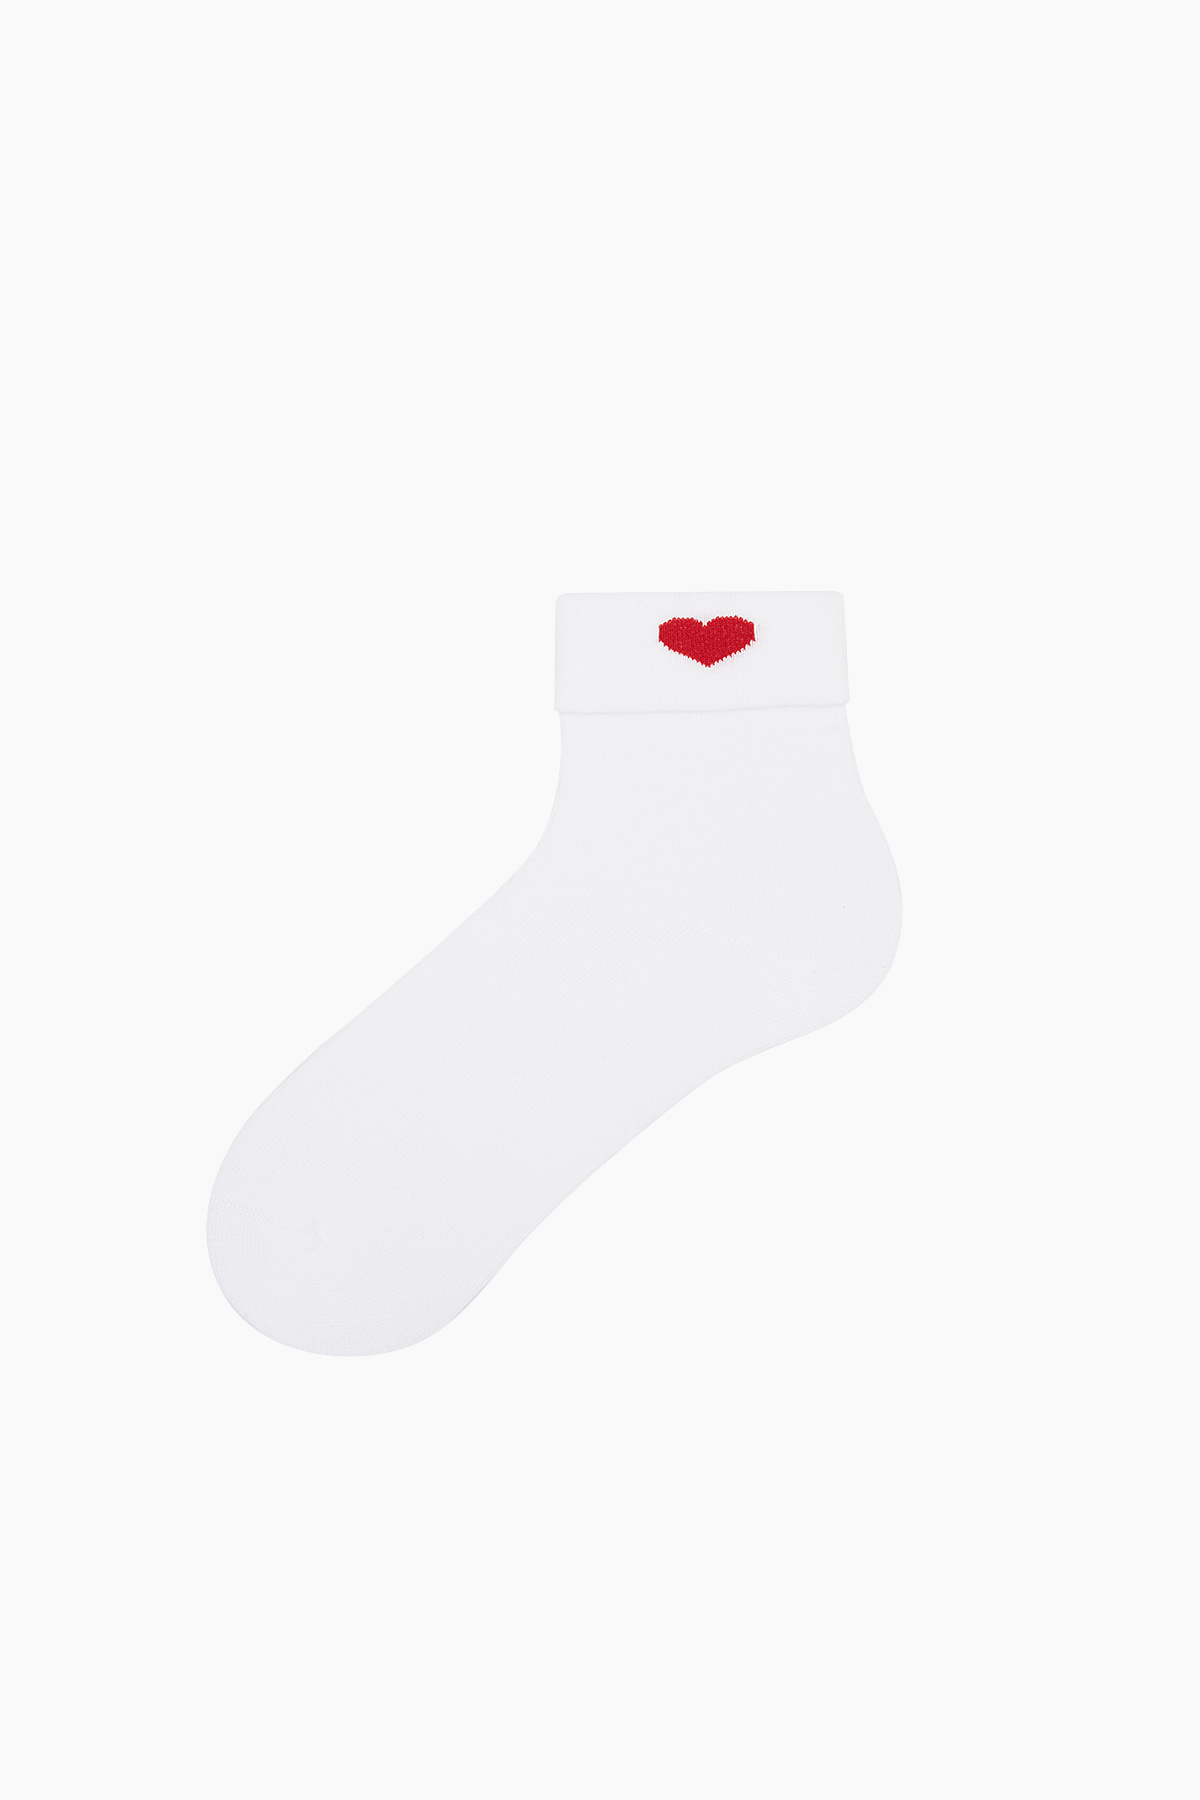 Bross - Bross Love Desenli Kadın Basıc Çorap